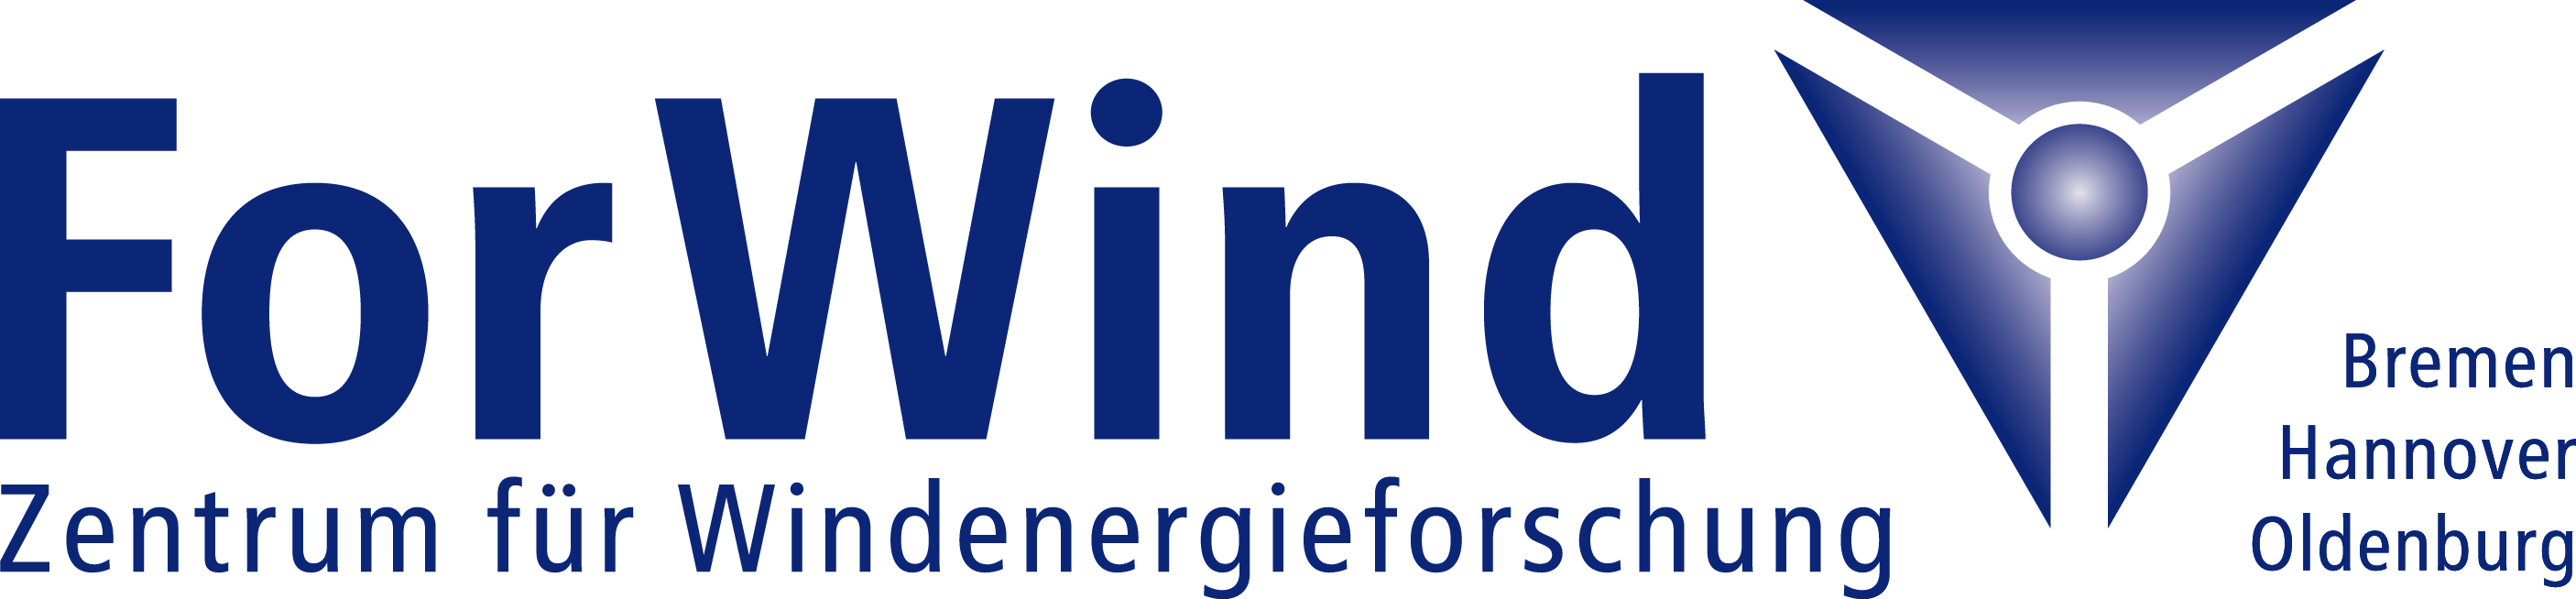 ForWind_Logo_deutsch.png  